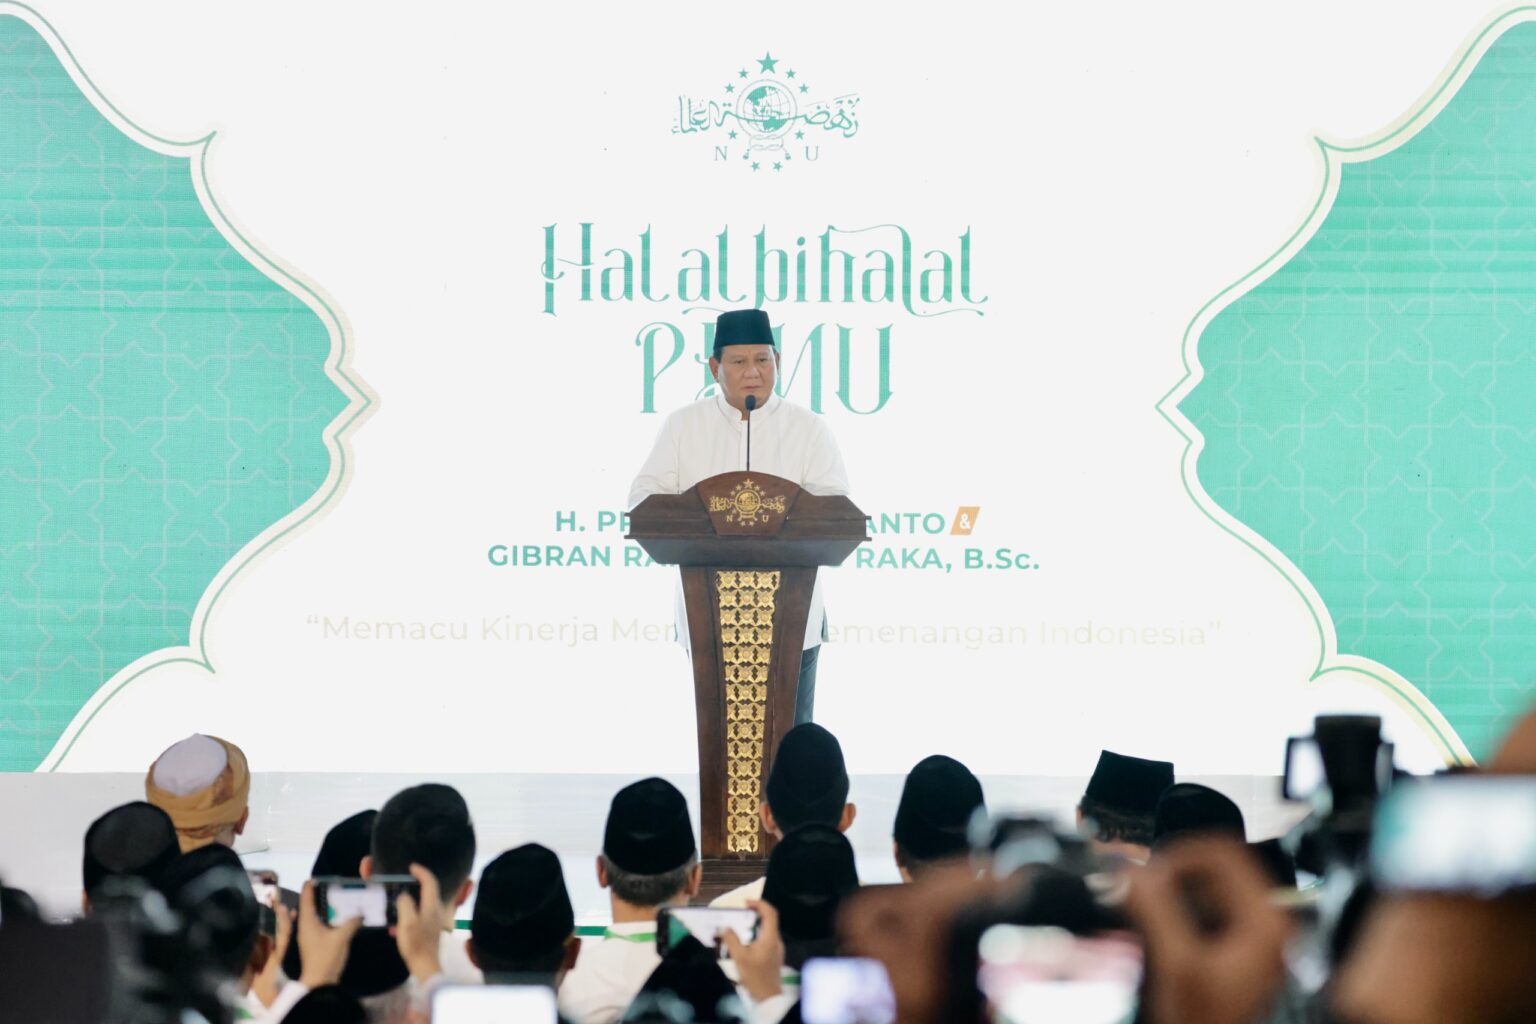 Prabowo Subianto Fokus Persiapkan Diri Lanjutkan Jokowi: Saya Merasa Benar-benar Disiapkan Beliau